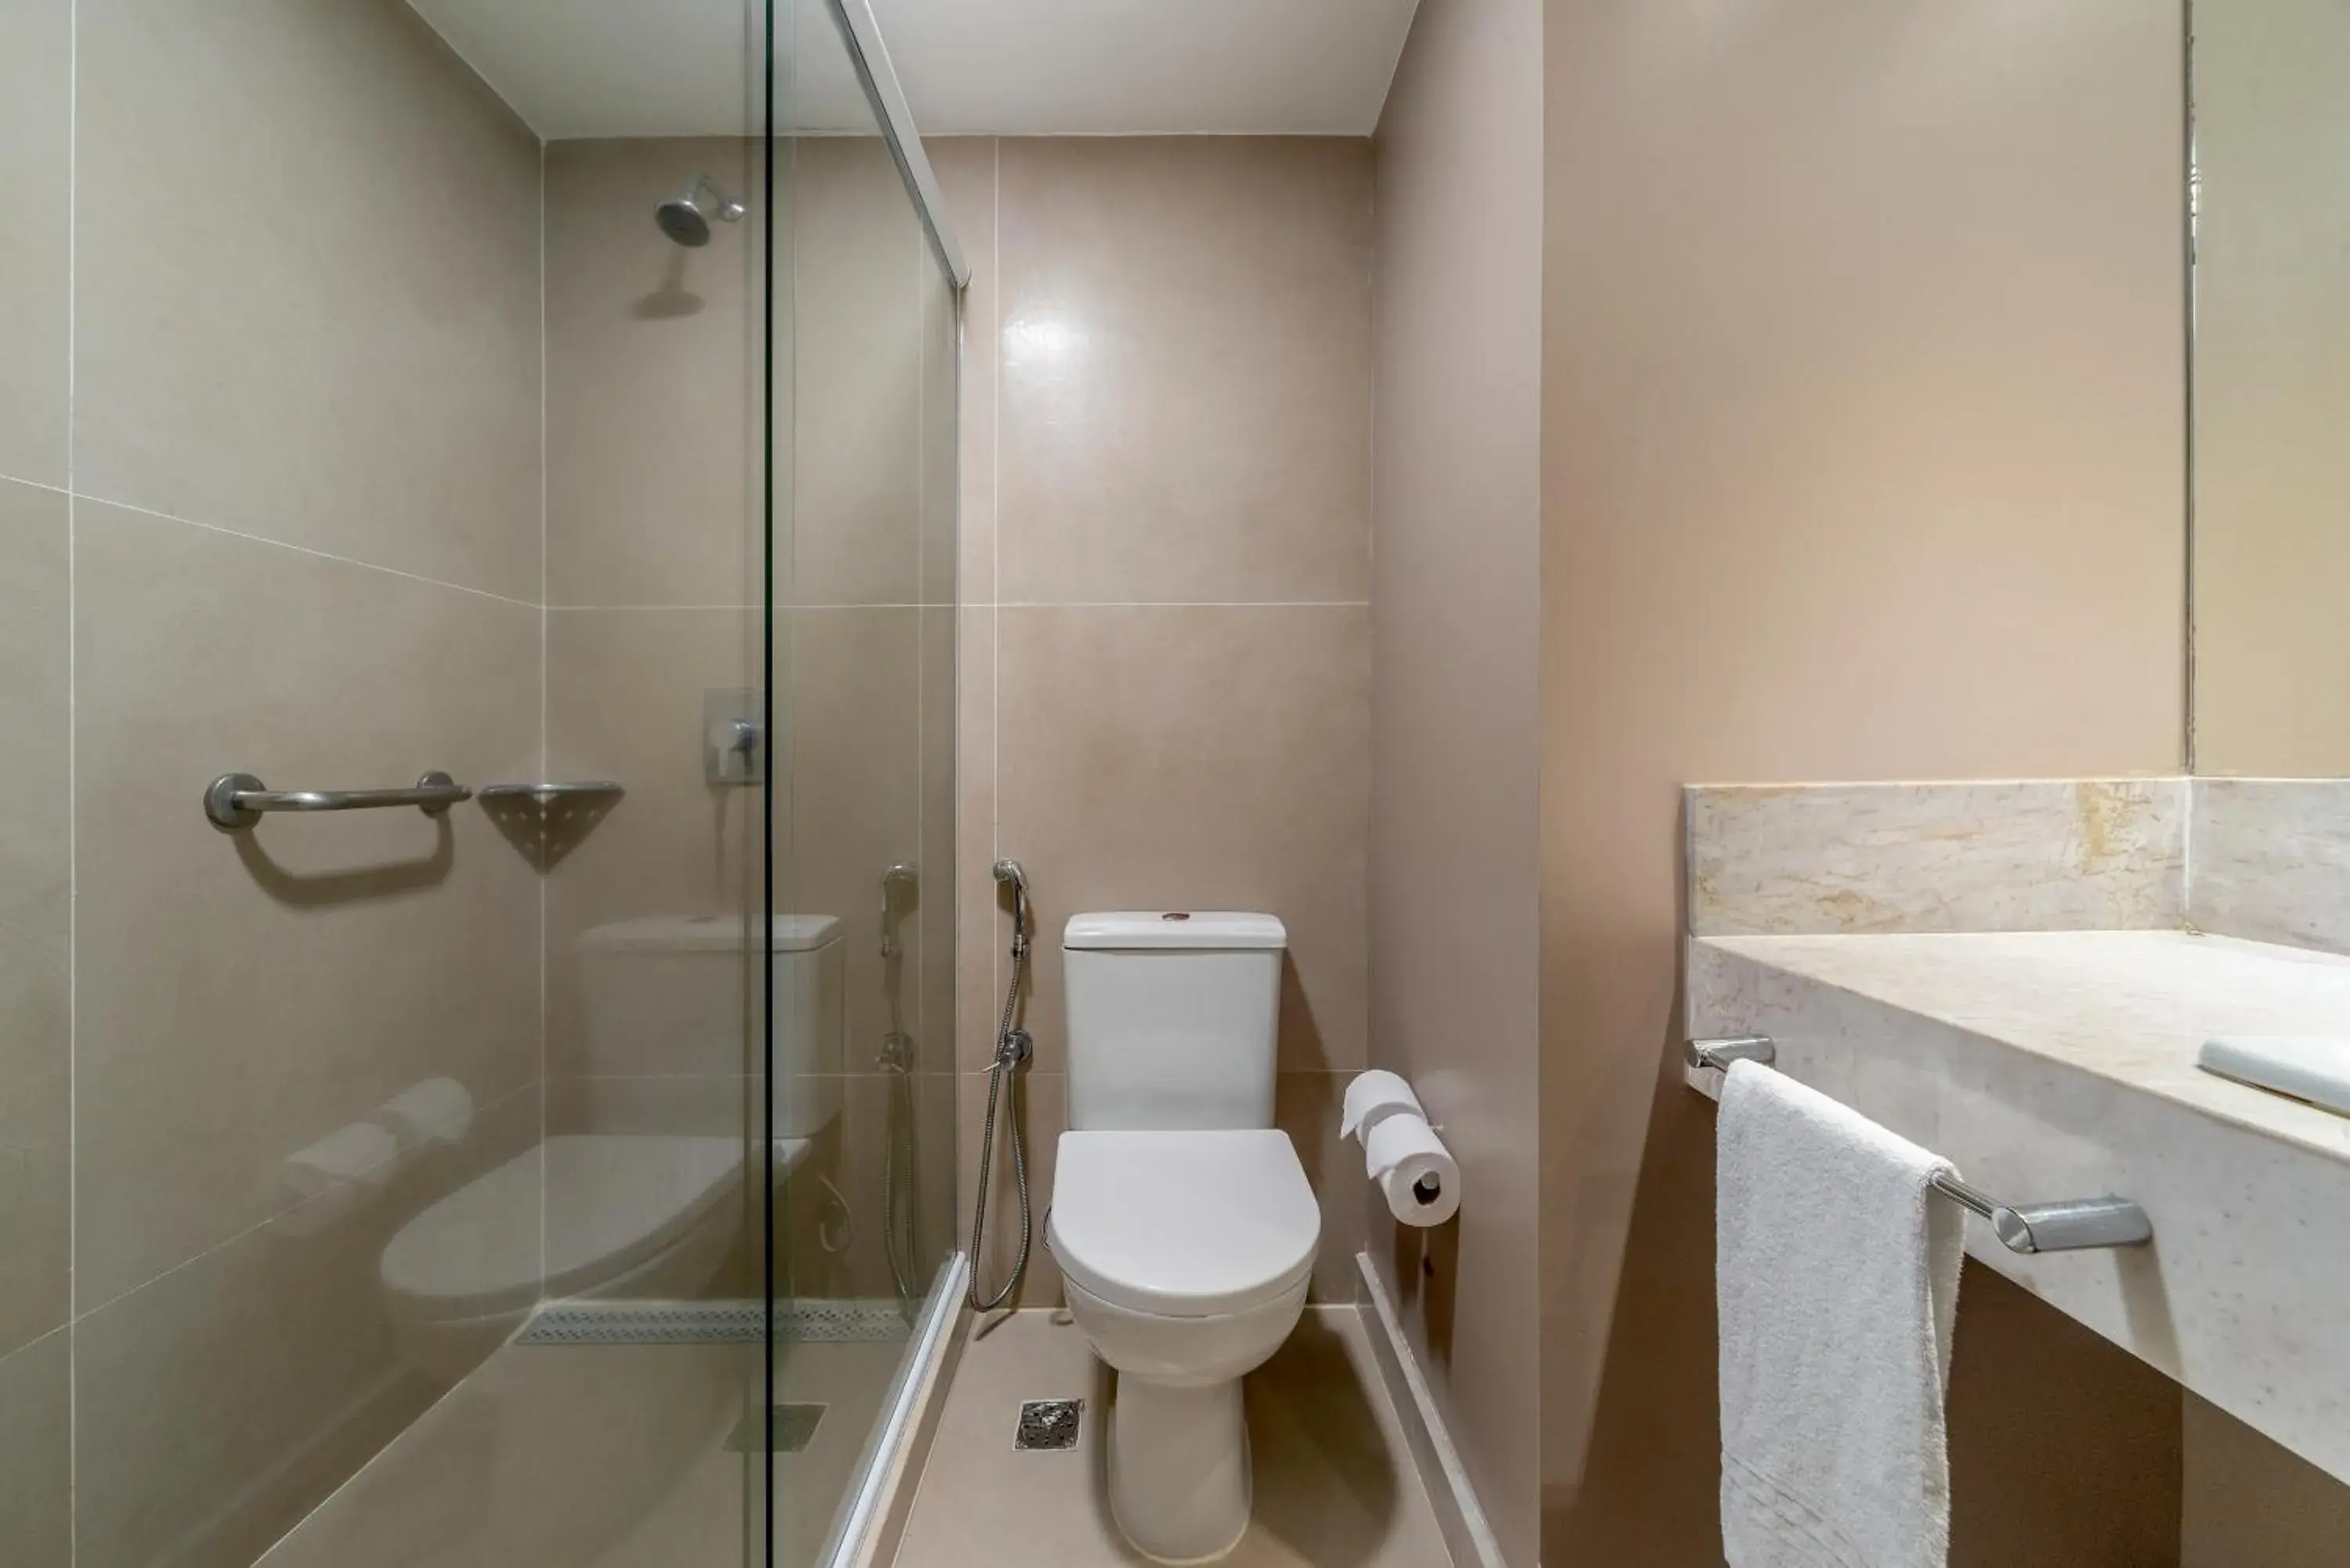 Bathroom in Hotel Laghetto Stilo Barra